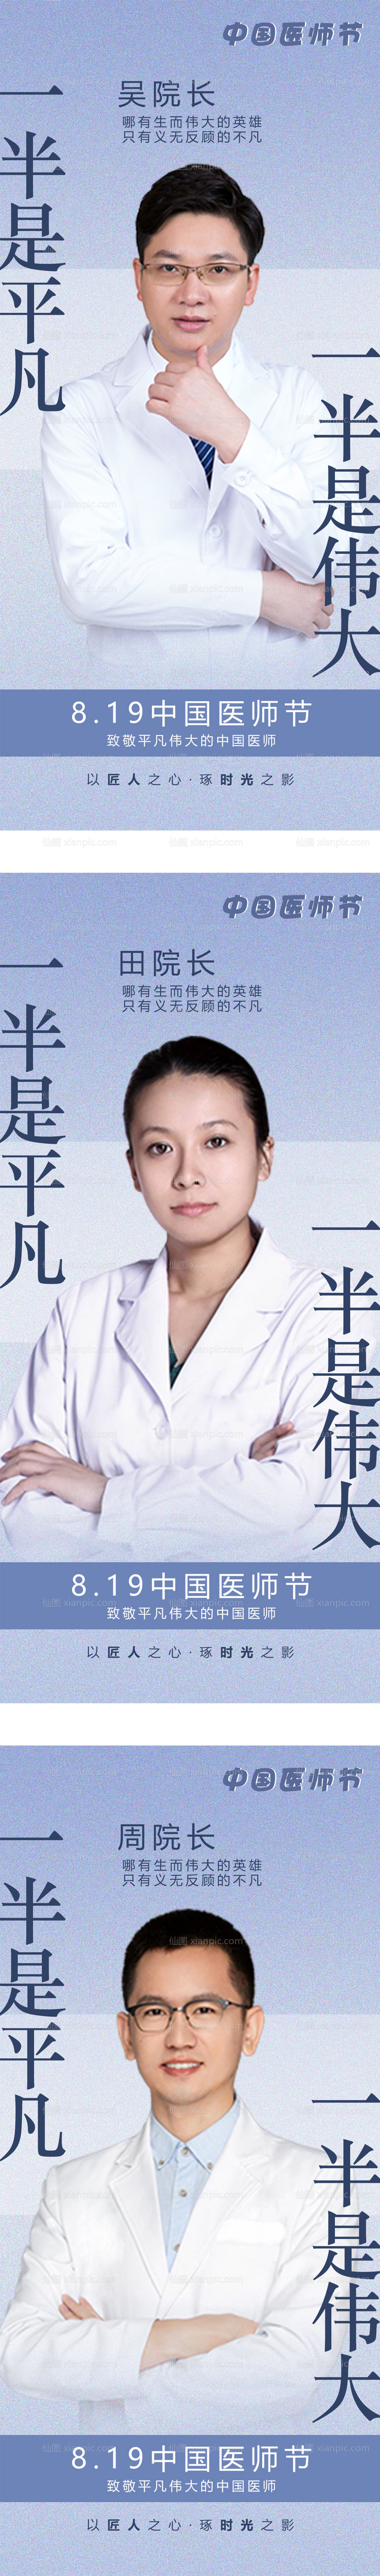 素材乐-医美中国医师节海报